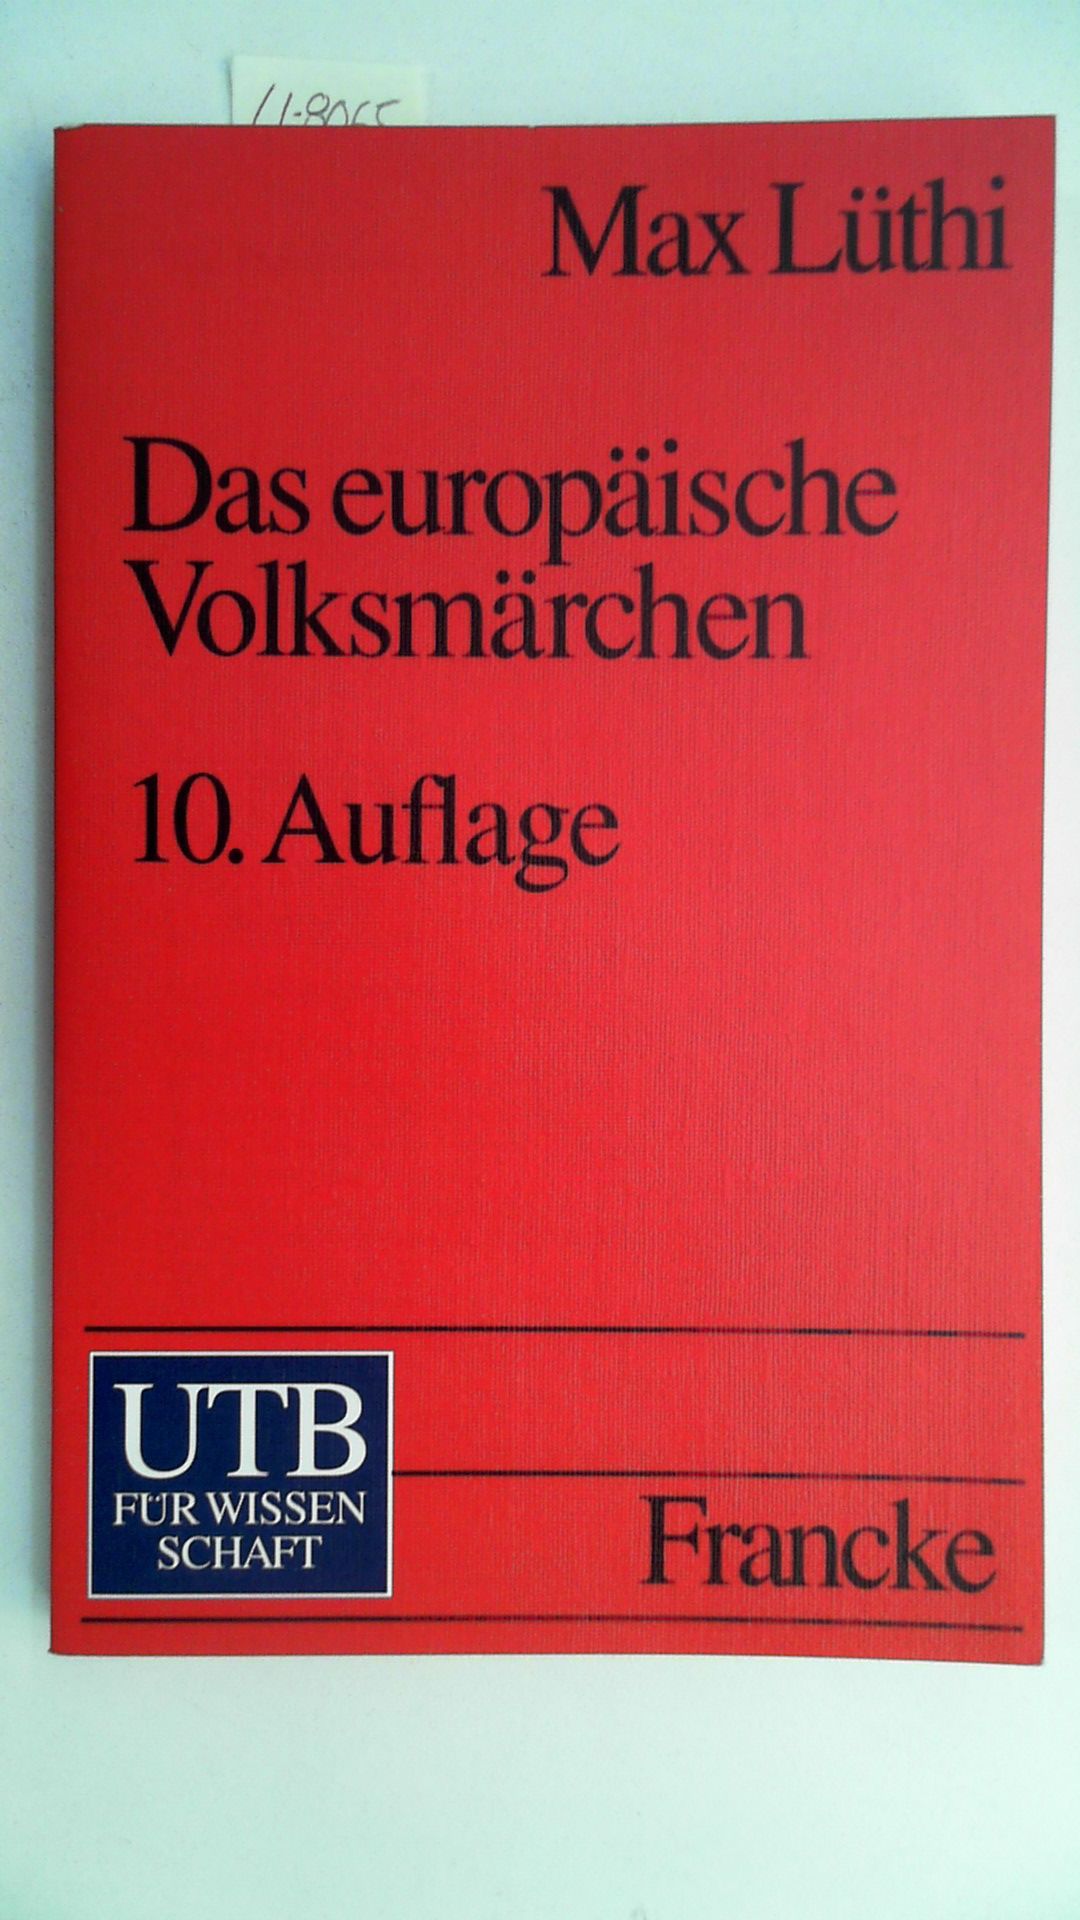 Das europäische Volksmärchen : Form und Wesen. UTB ; 312 - Lüthi, Max